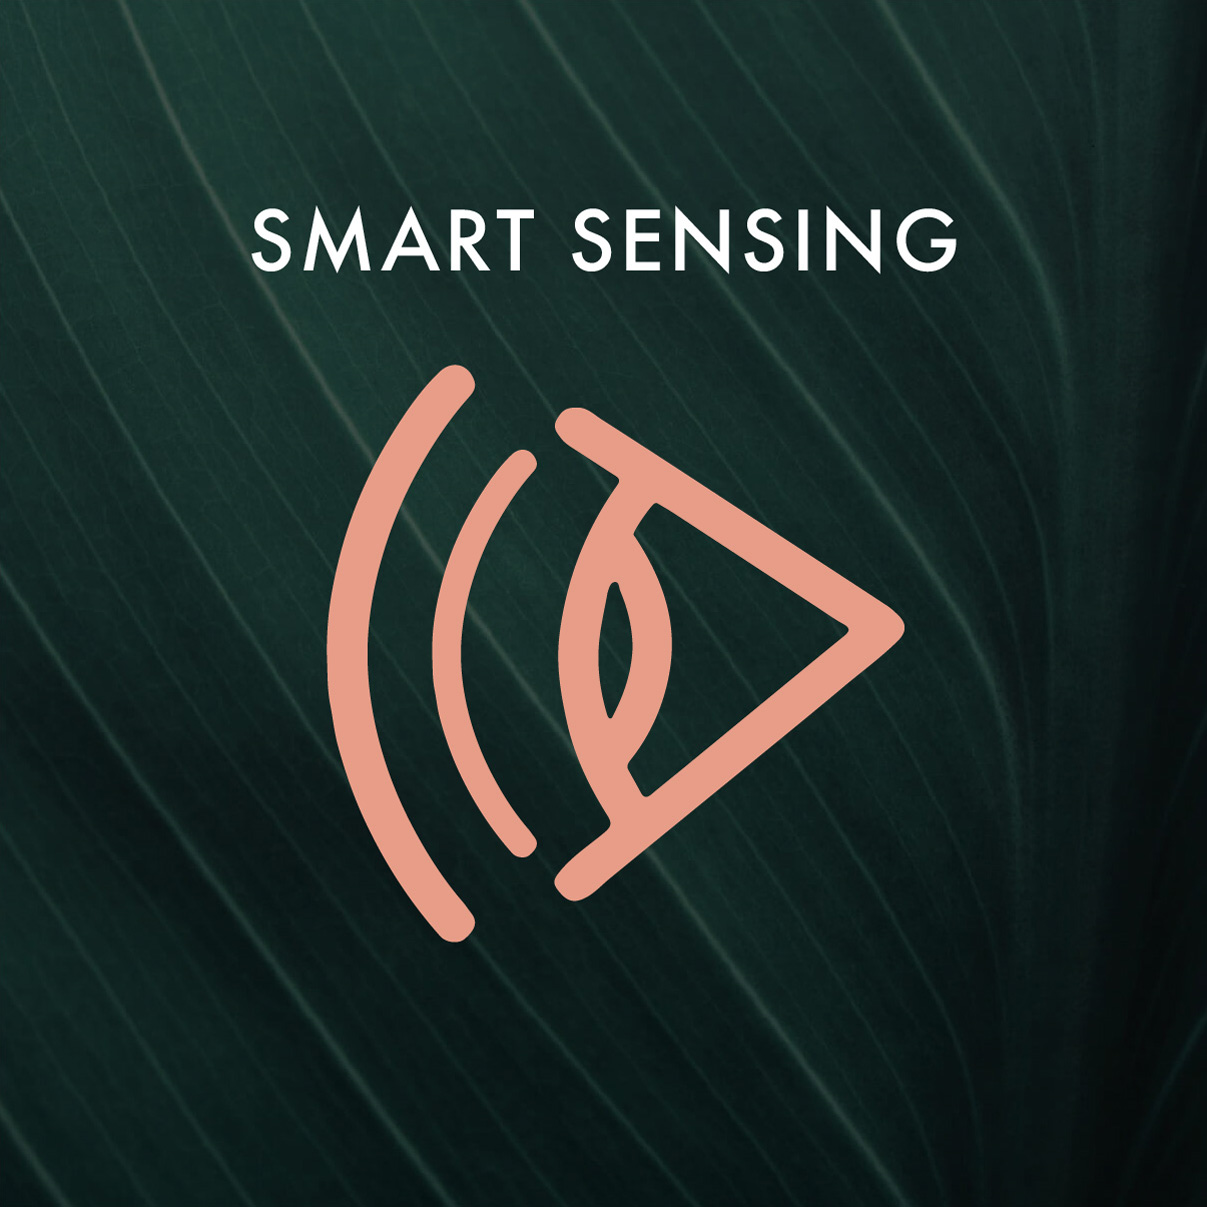 Smart Sensing